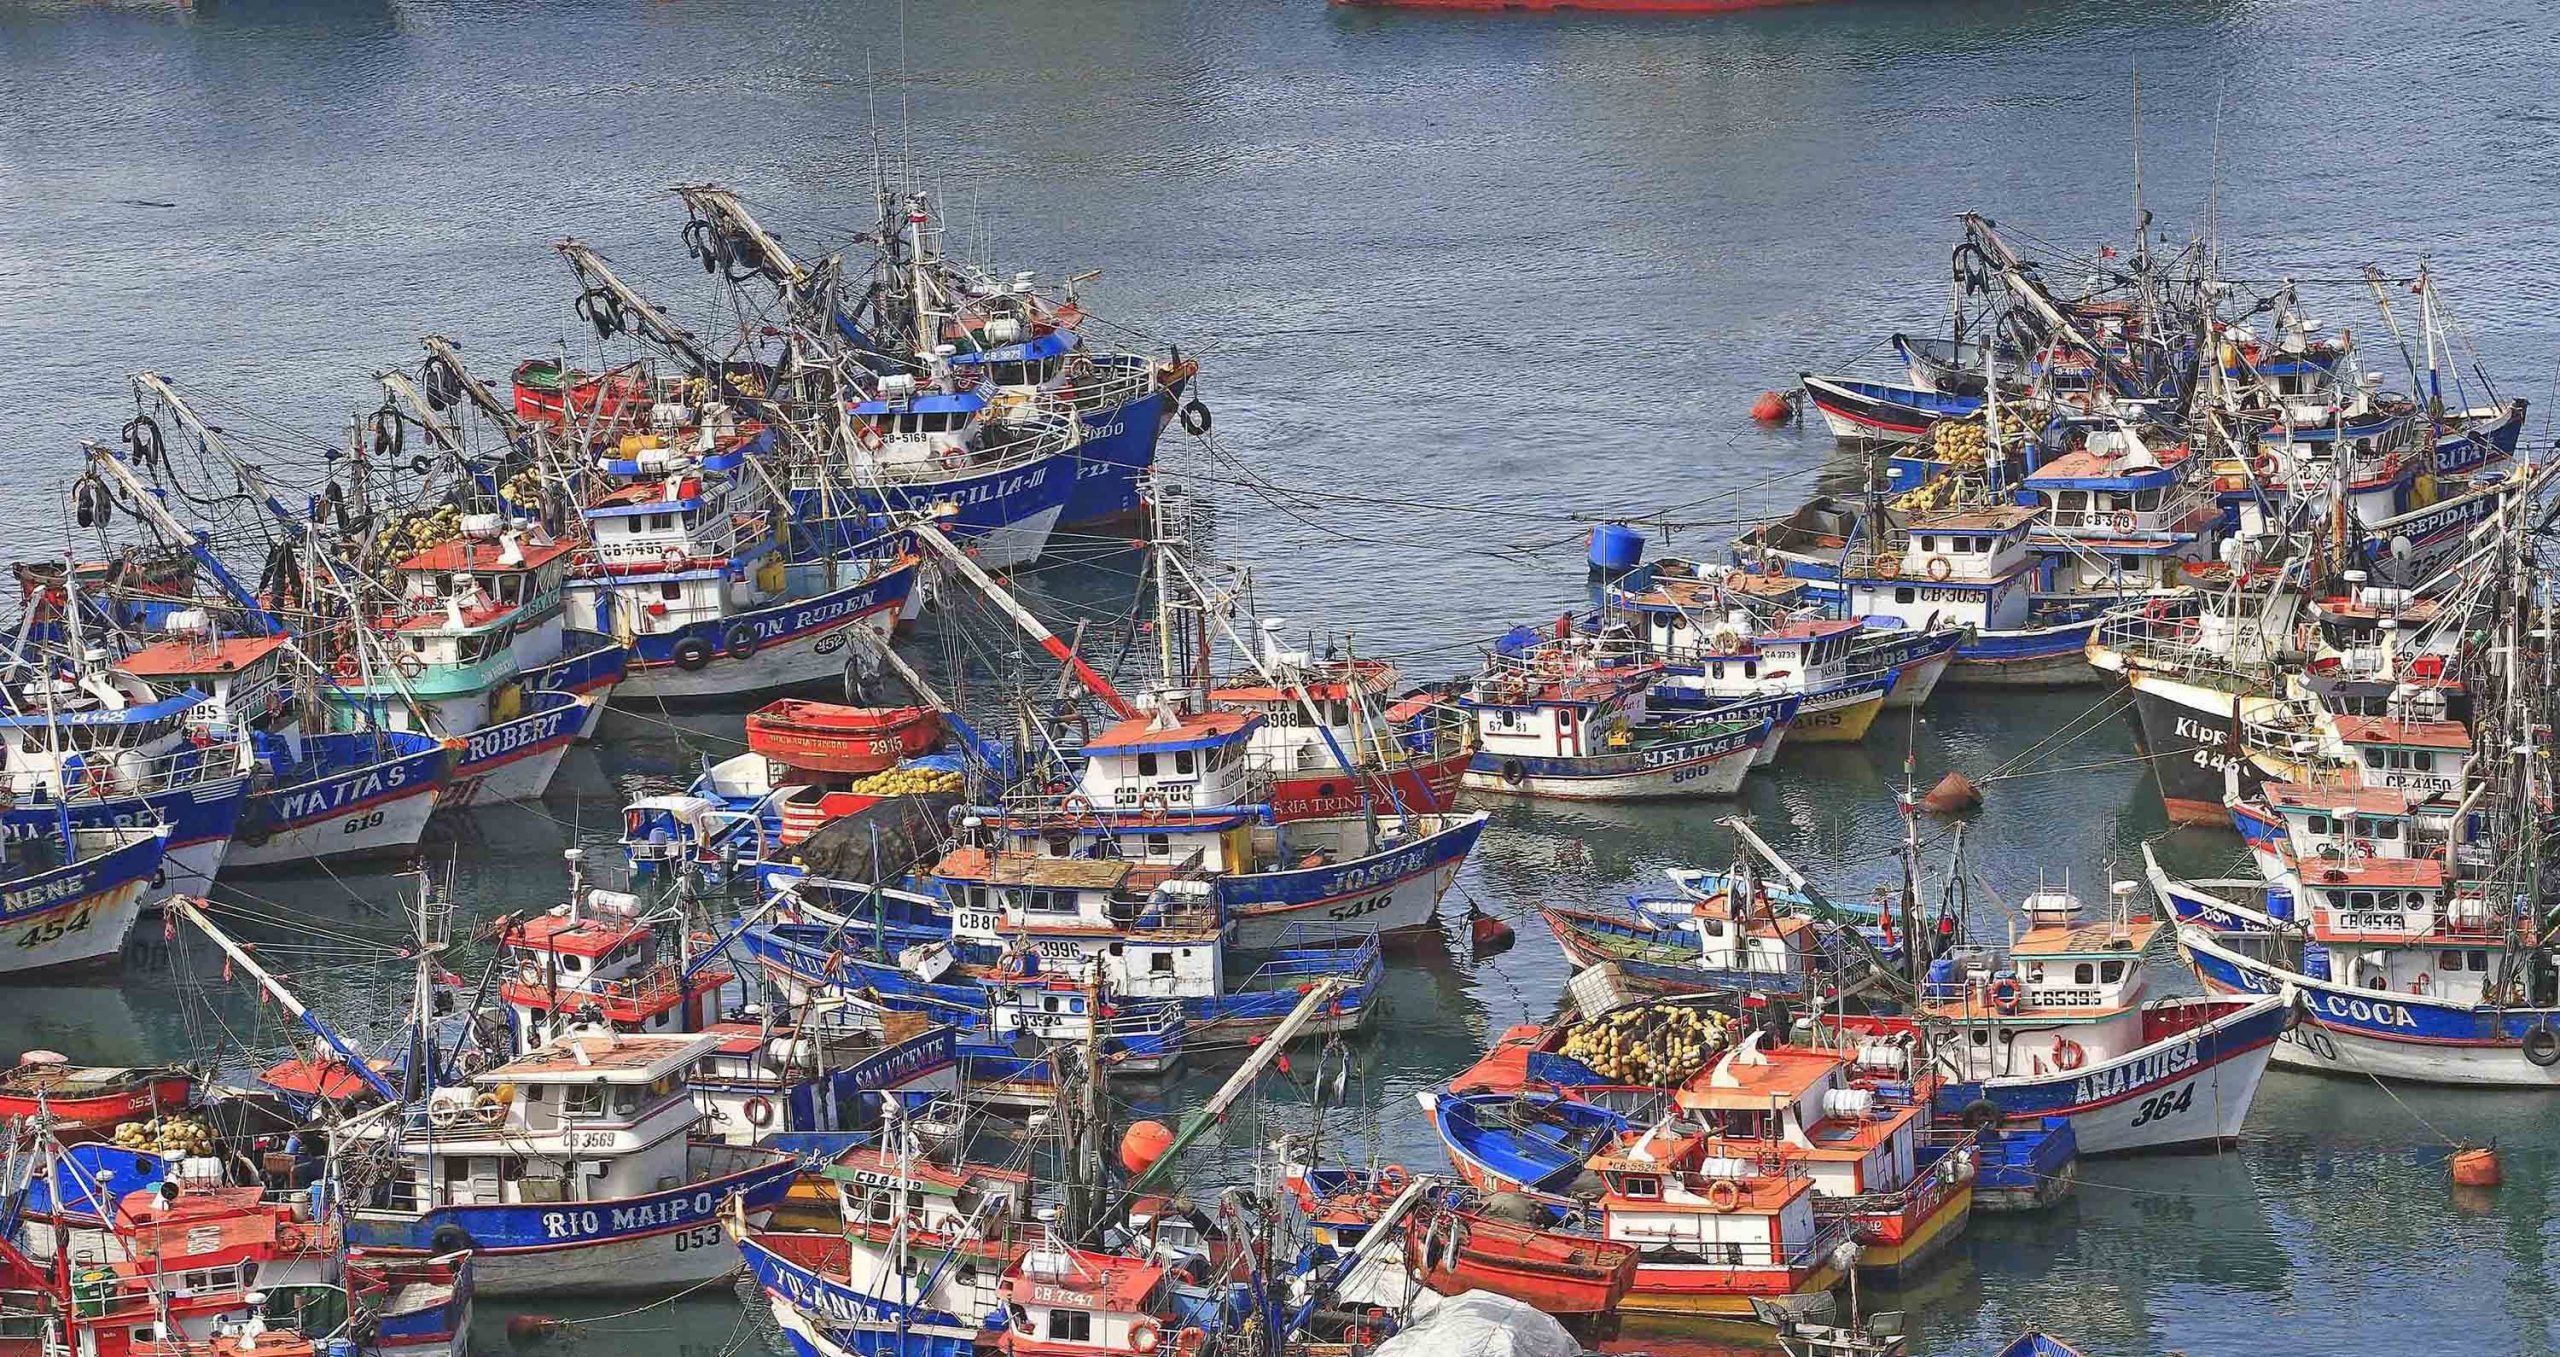 Asamblea de Pescadores Artesanales pide anulación inmediata de Ley Longueira y llama a formar agrupación plurinacional y sin distinción de género